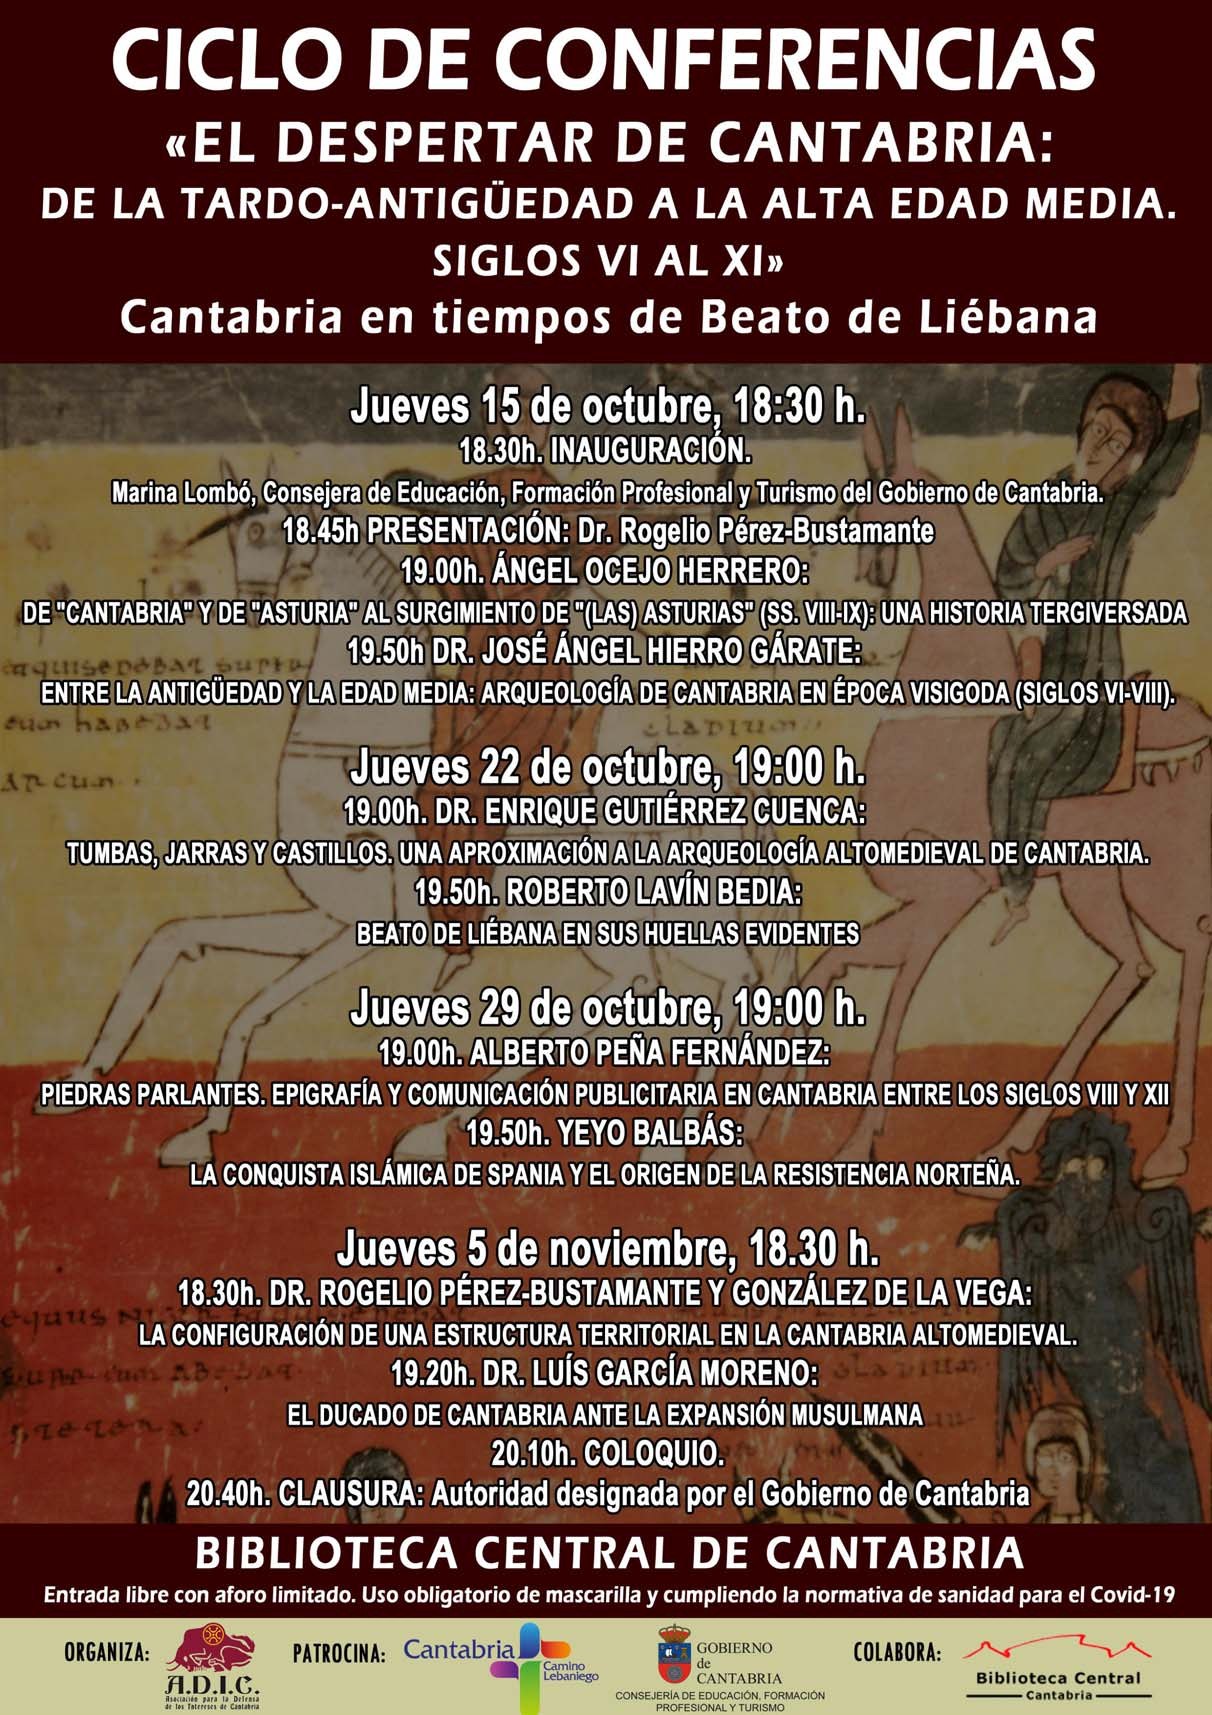  La Biblioteca Central acoge un ciclo de conferencias sobre la historia de Cantabria desde la Tardo-Antigüedad hasta la Alta Edad Media